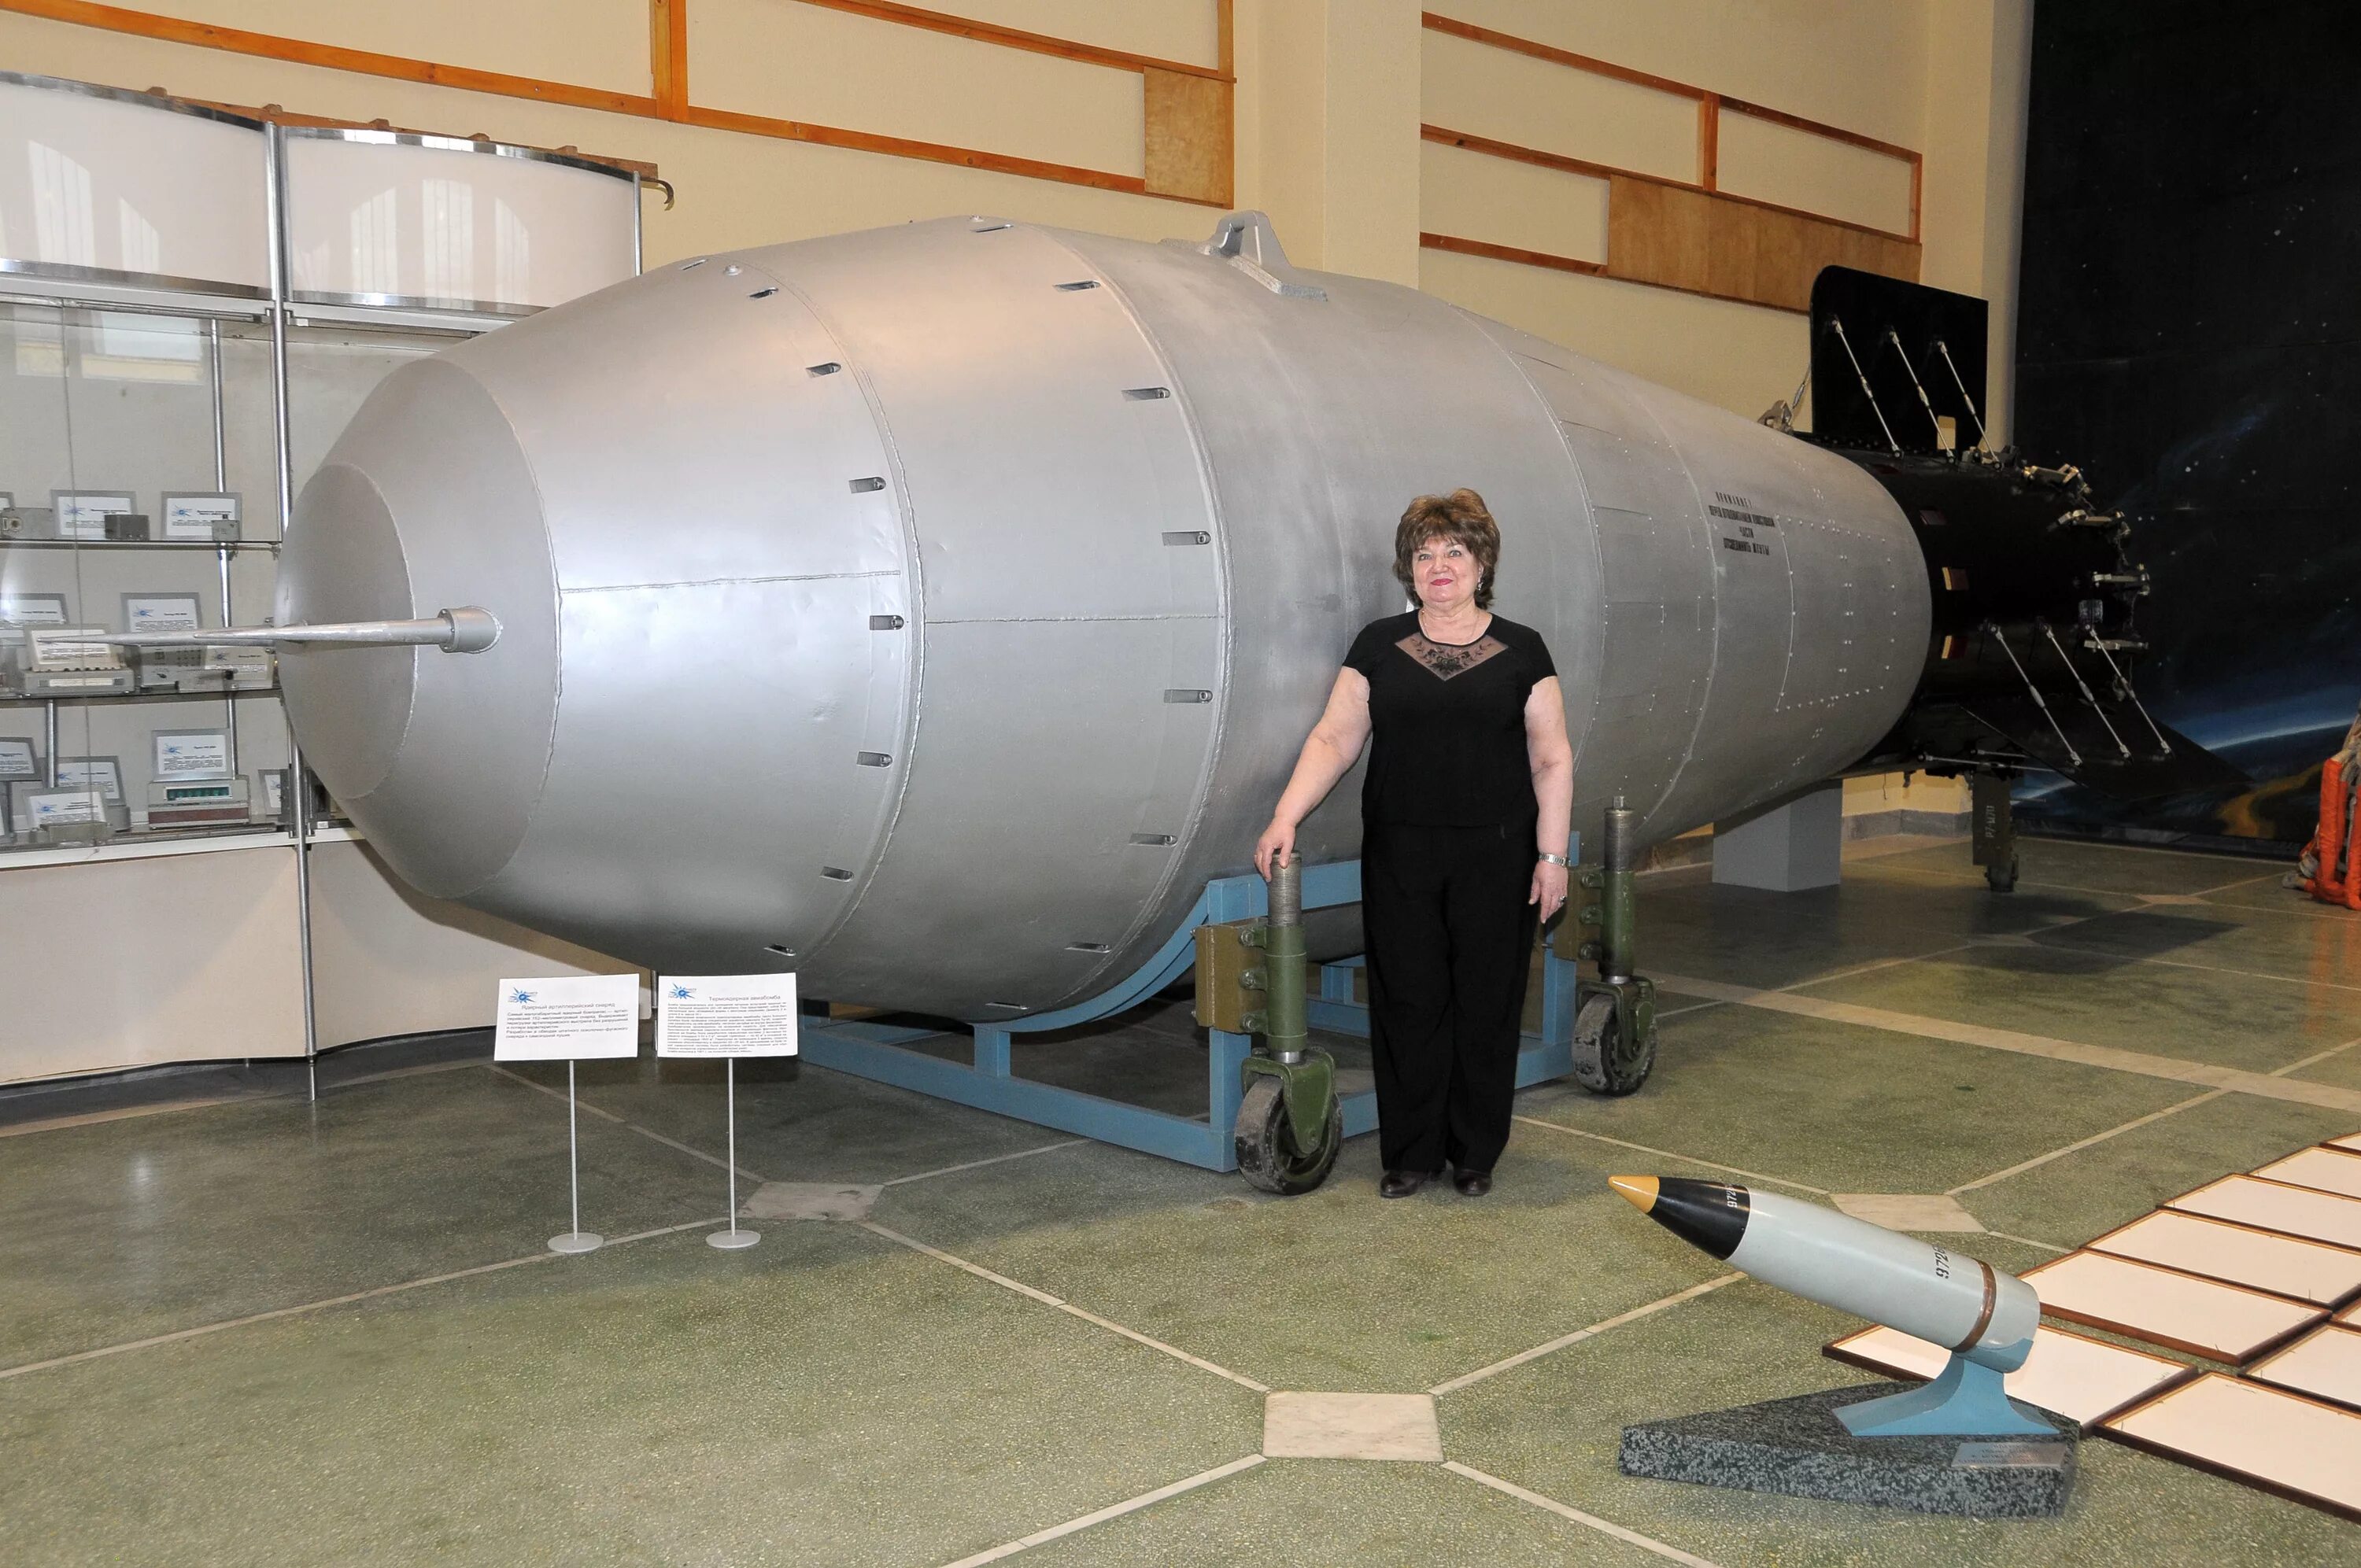 Самая мощная бомба в россии. Ан602 царь-бомба. Царь бомба 100мт. Кузькина мать ядерная бомба. Термоядерная бомба ан602 ("Кузькина мать").